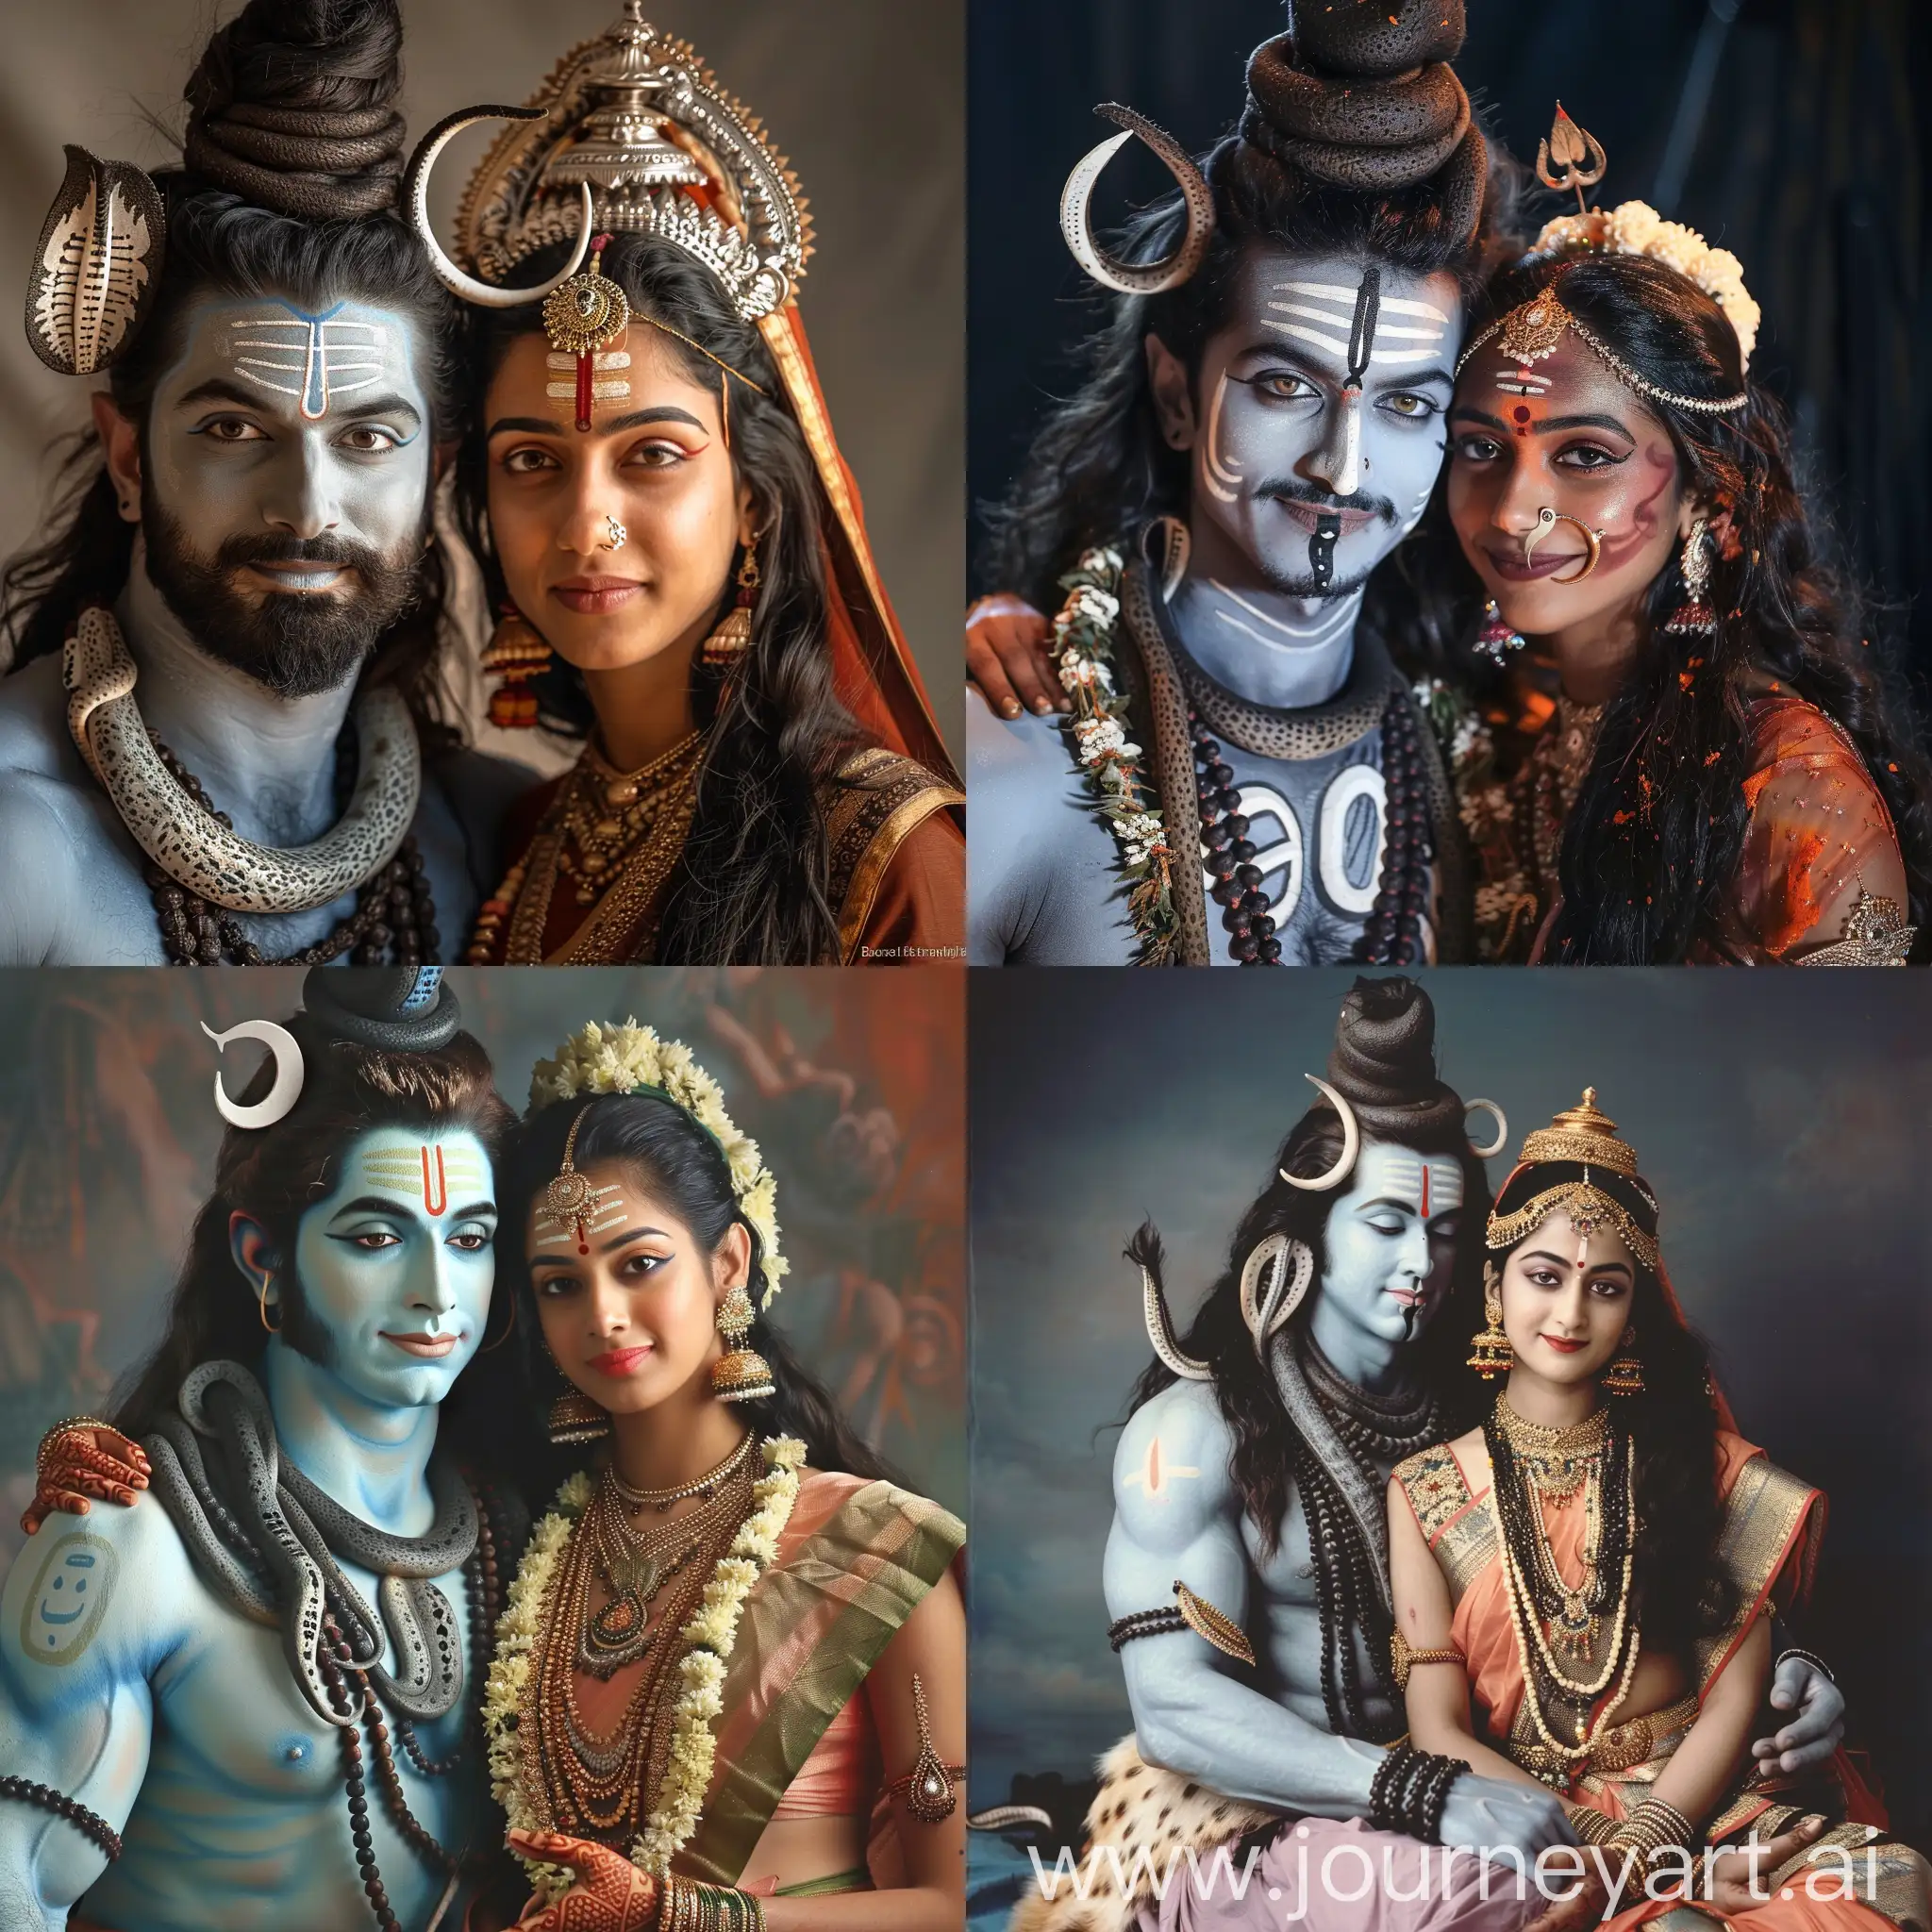 Real photo of hindu god shiva and hindu goddess Parvati